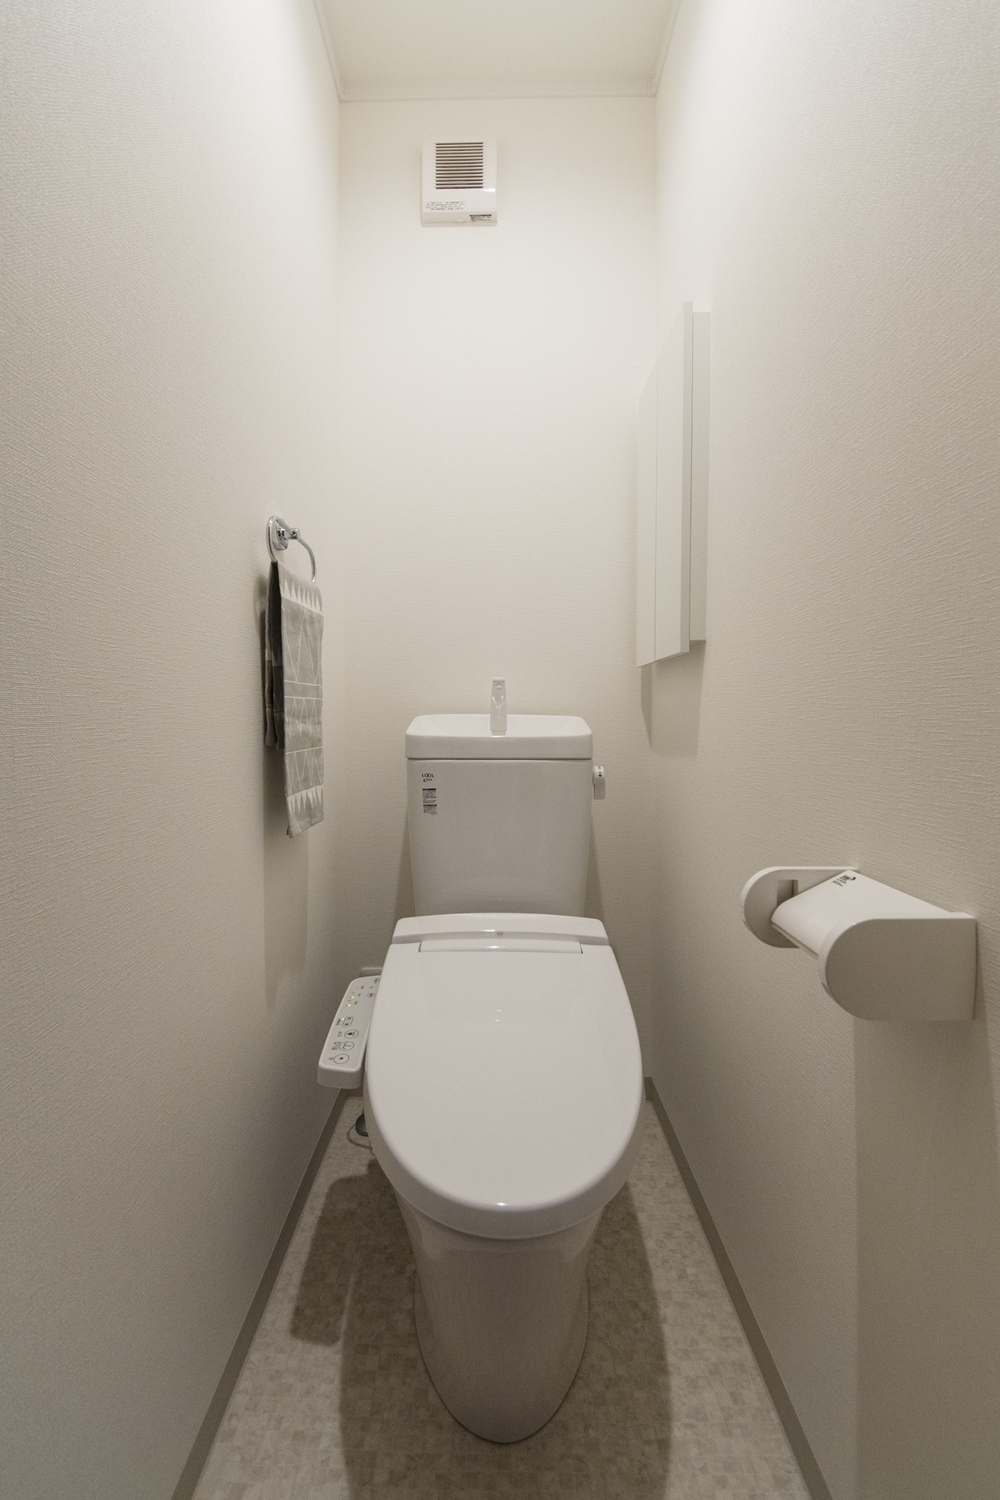 白を基調とした清潔感のあるトイレ。